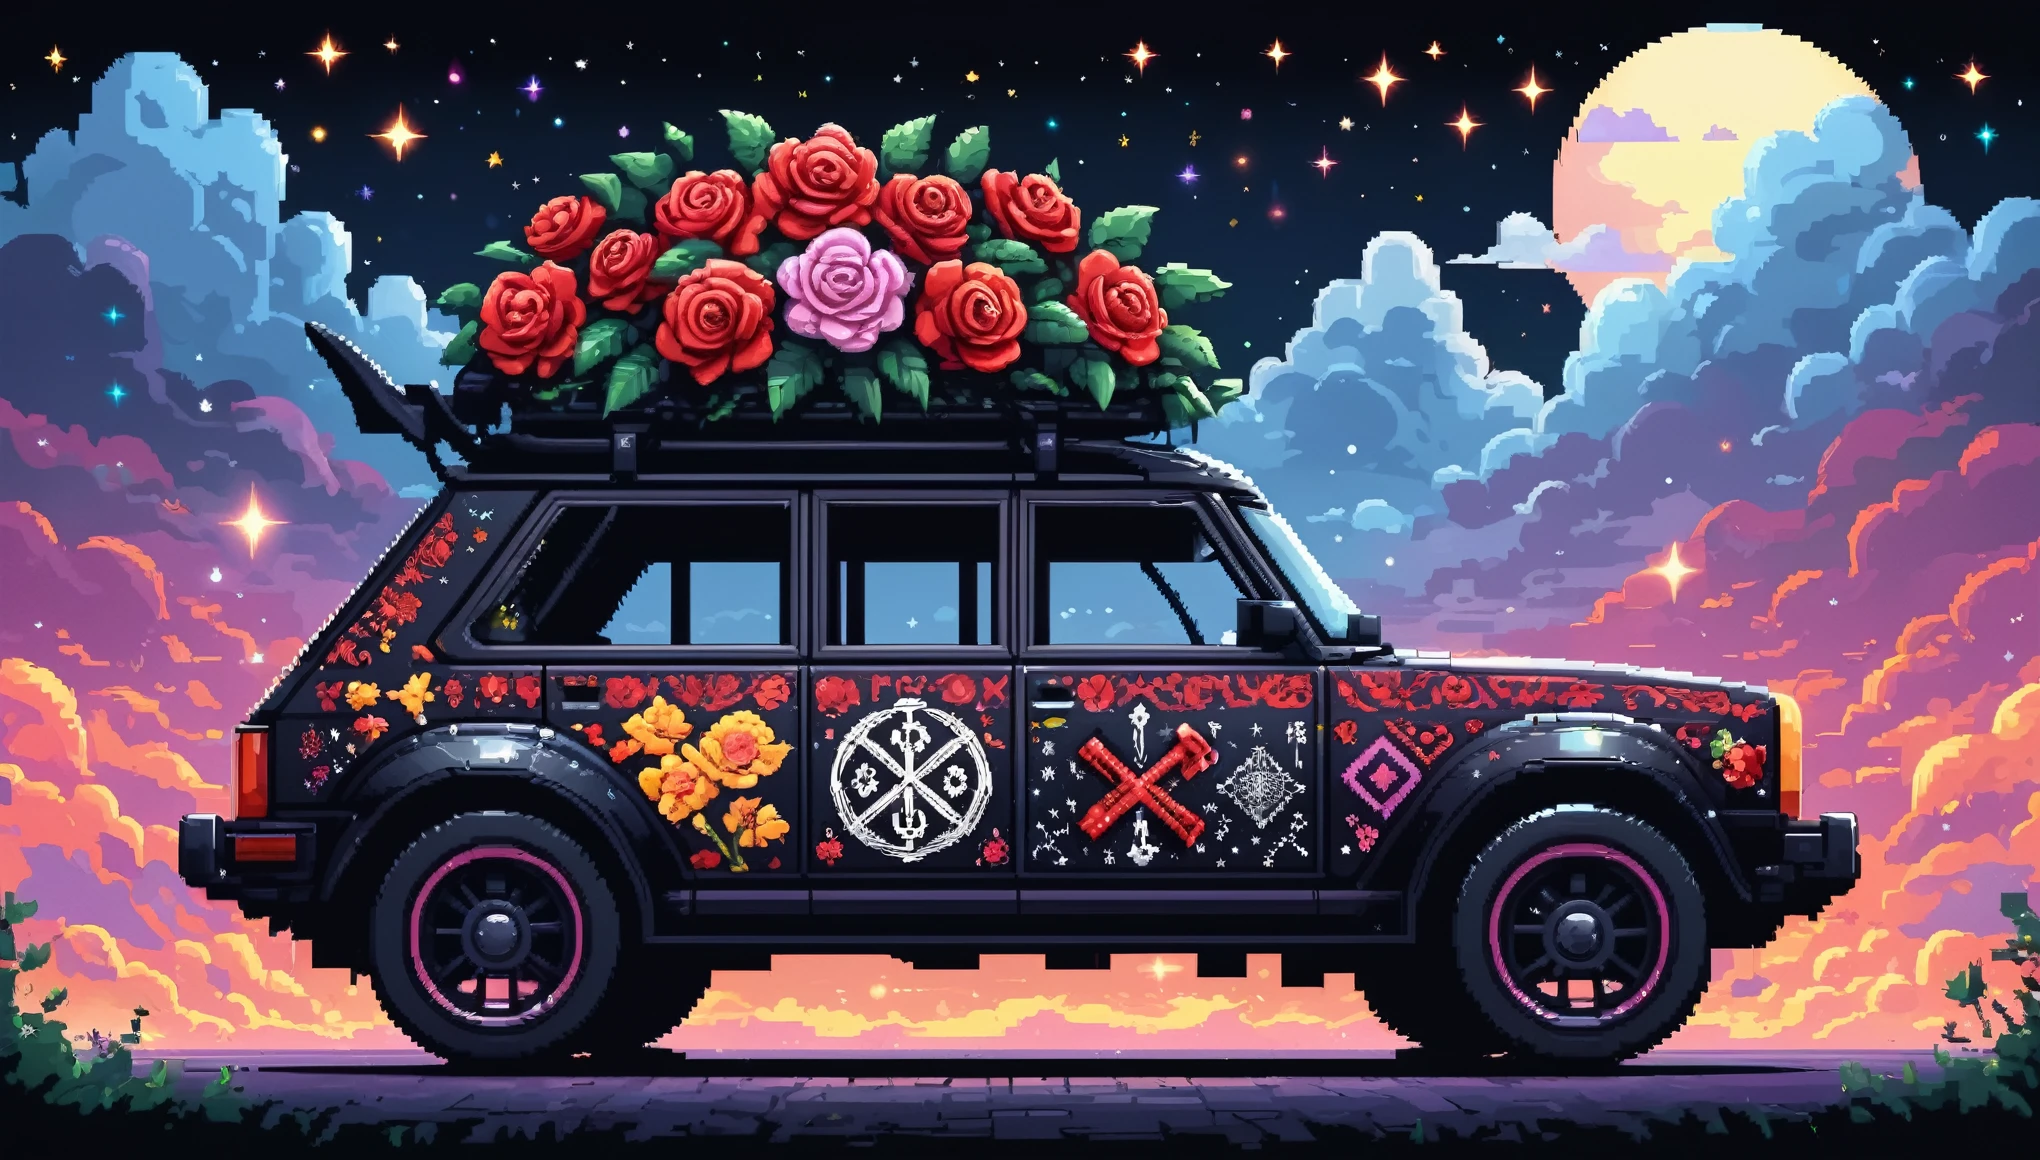 Profissional épico brilhante (ilustração de pixel bonito dos desenhos animados:1.2), (Obra-prima em resolução máxima de 16K, Excelente qualidade, ultra detalhado:1.3), side view of a gre (bizarro:1.2) carro com (rodas altas:1.2) e (características nítidas, decorated with runes e folding roof), flores de rosa impressas, em meio à silhueta (Mundo gótico) da noite, clouds e sparkles.